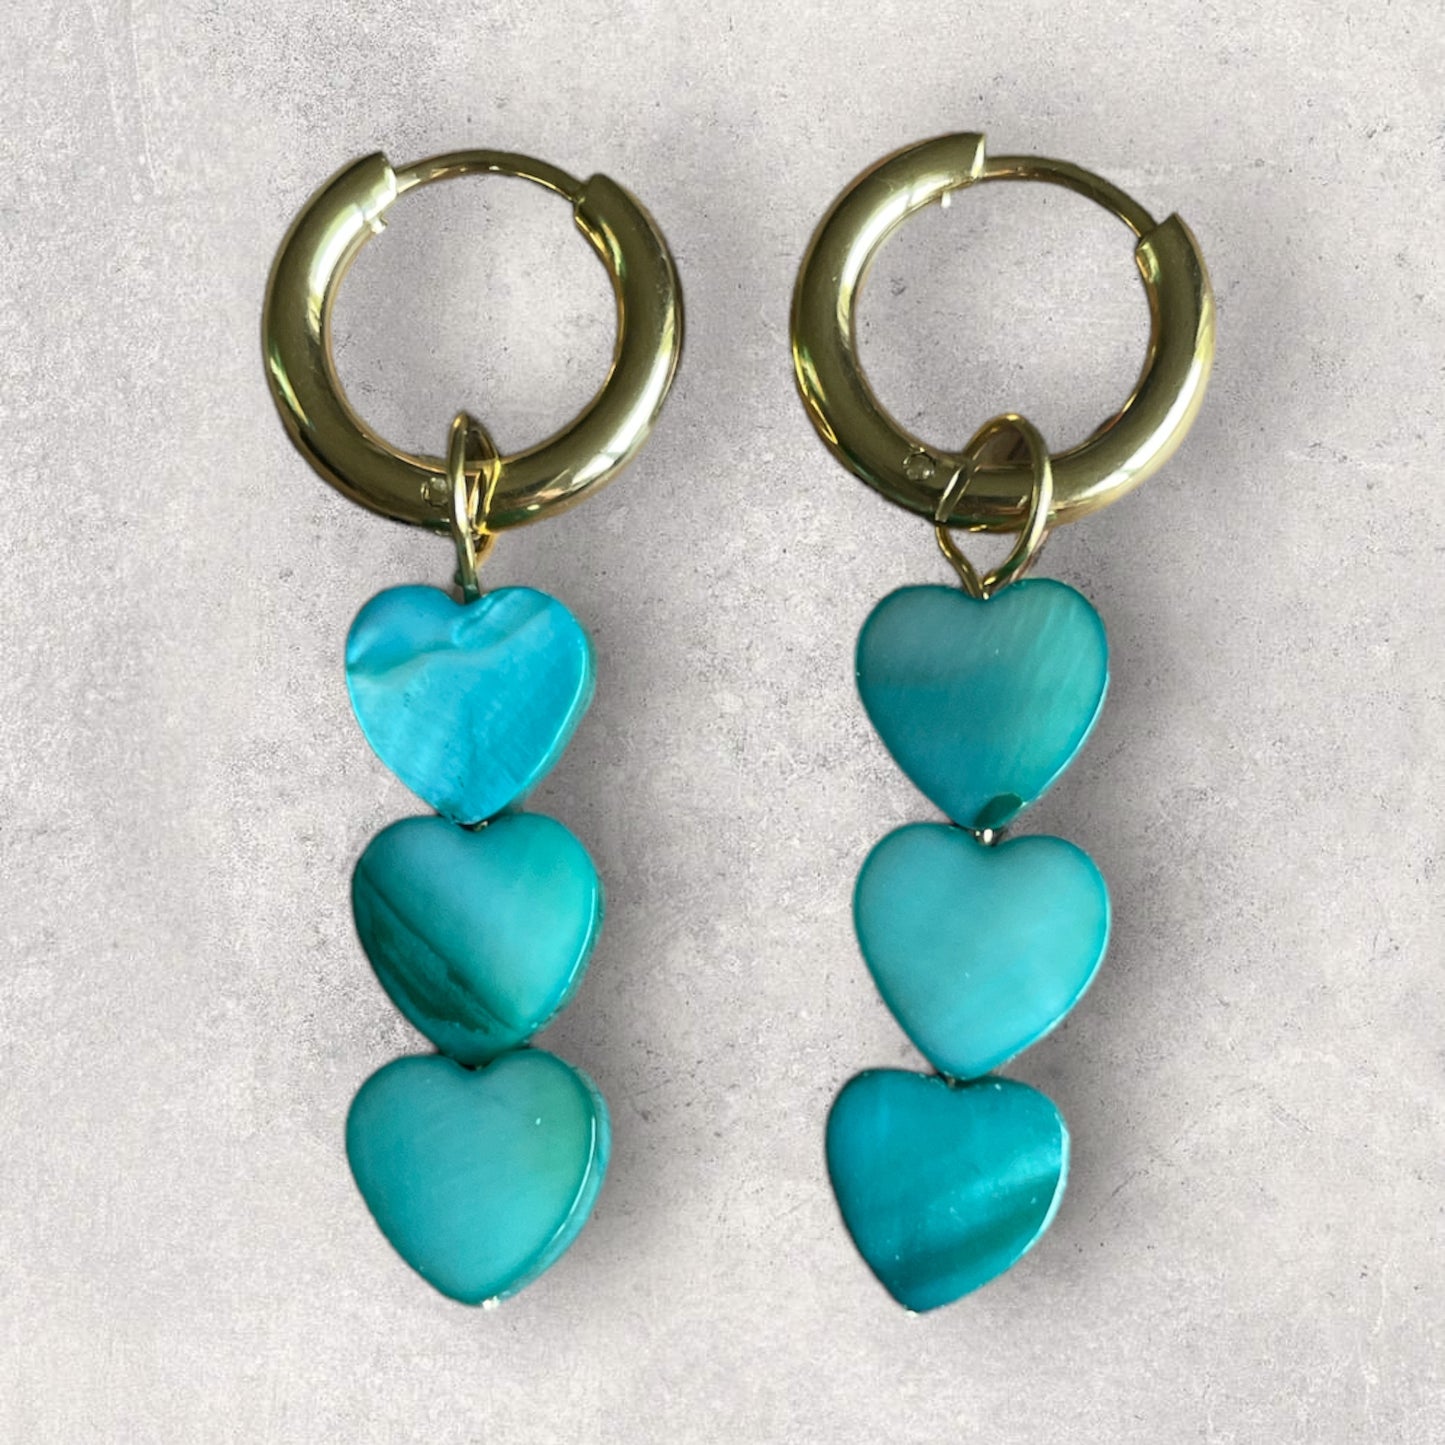 'BLUE SEA' earrings